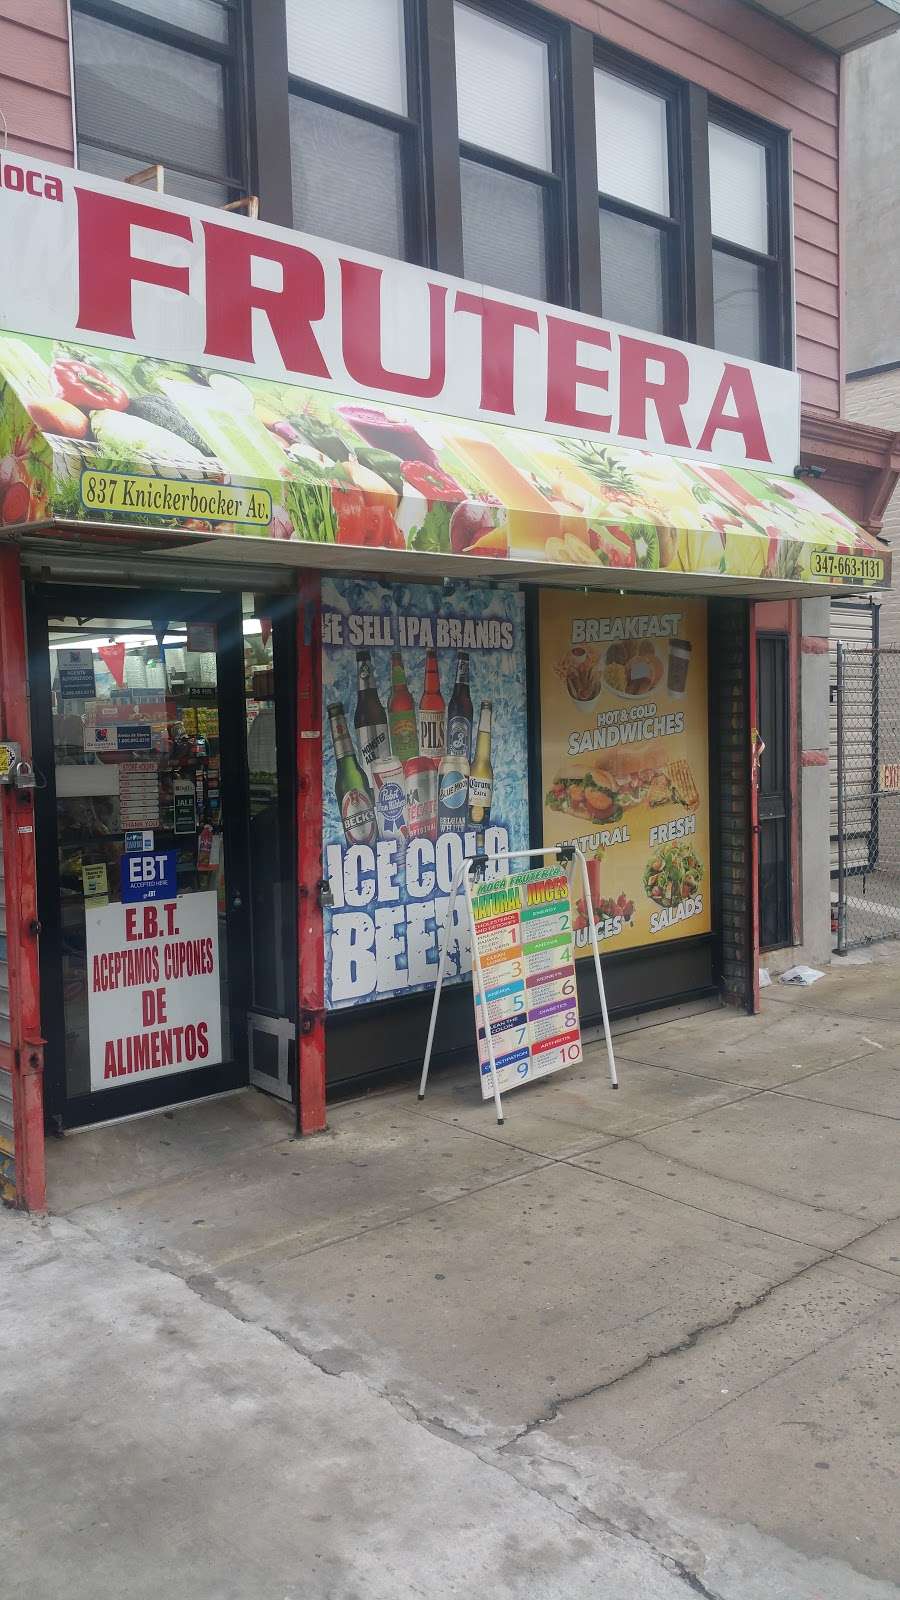 Moca Frutera | 837 Knickerbocker Ave, Brooklyn, NY 11207